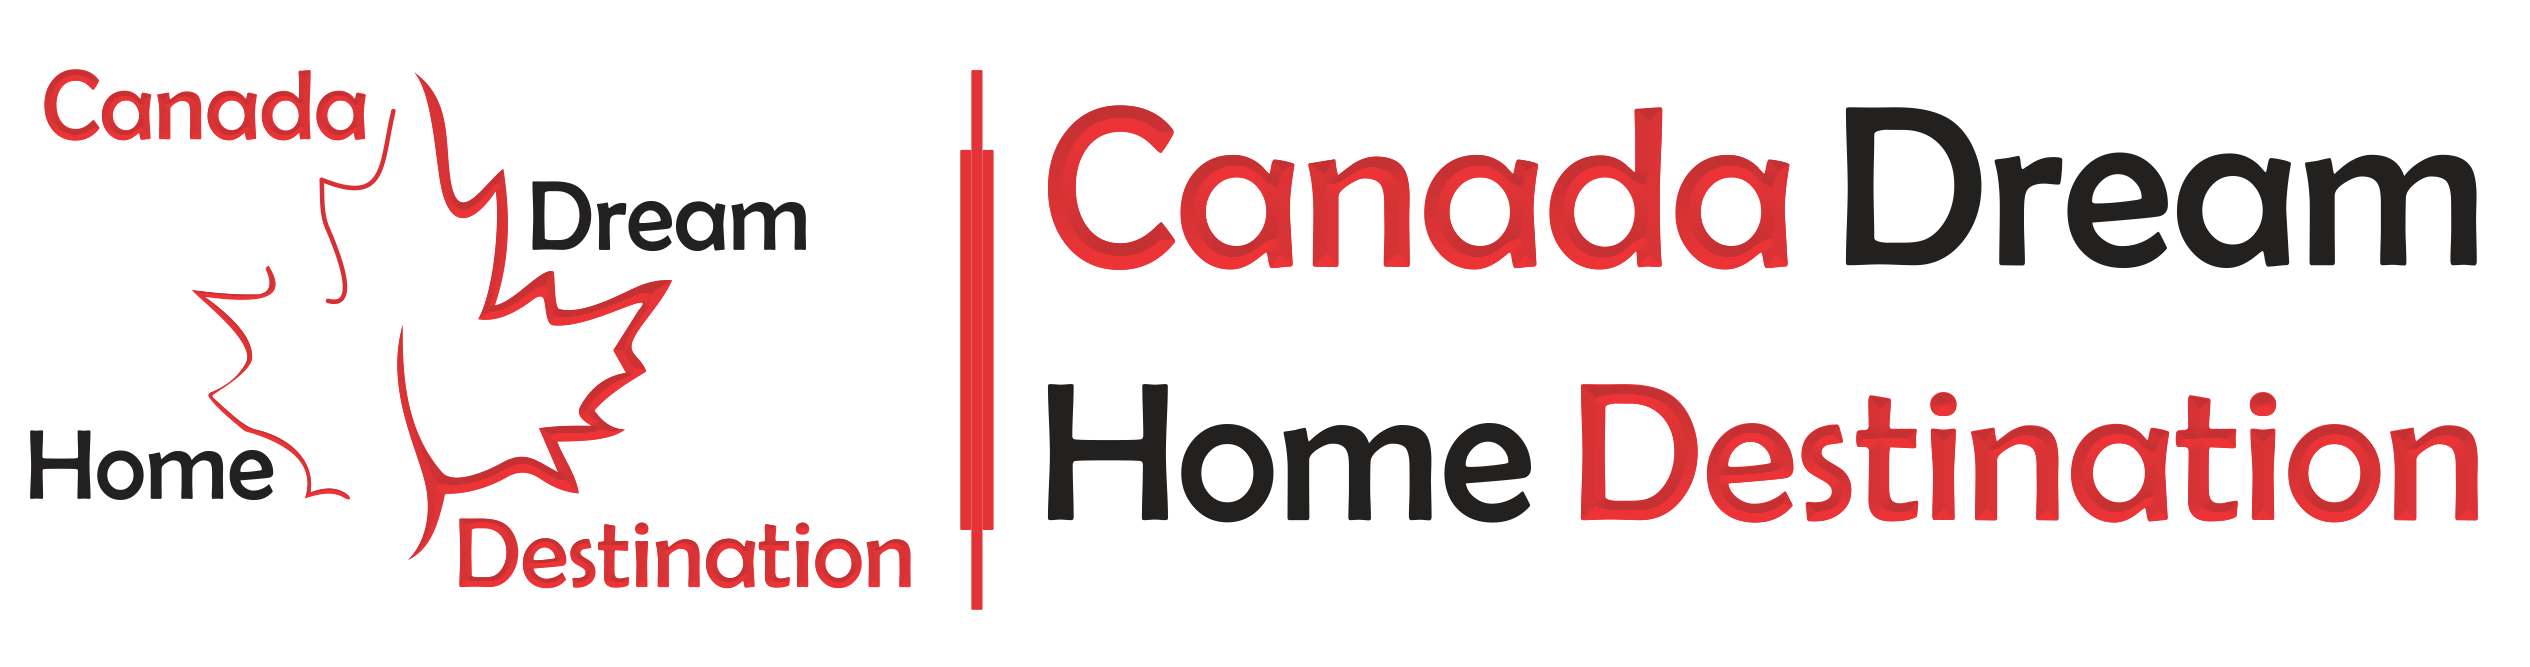 Canada Dream Home Destination